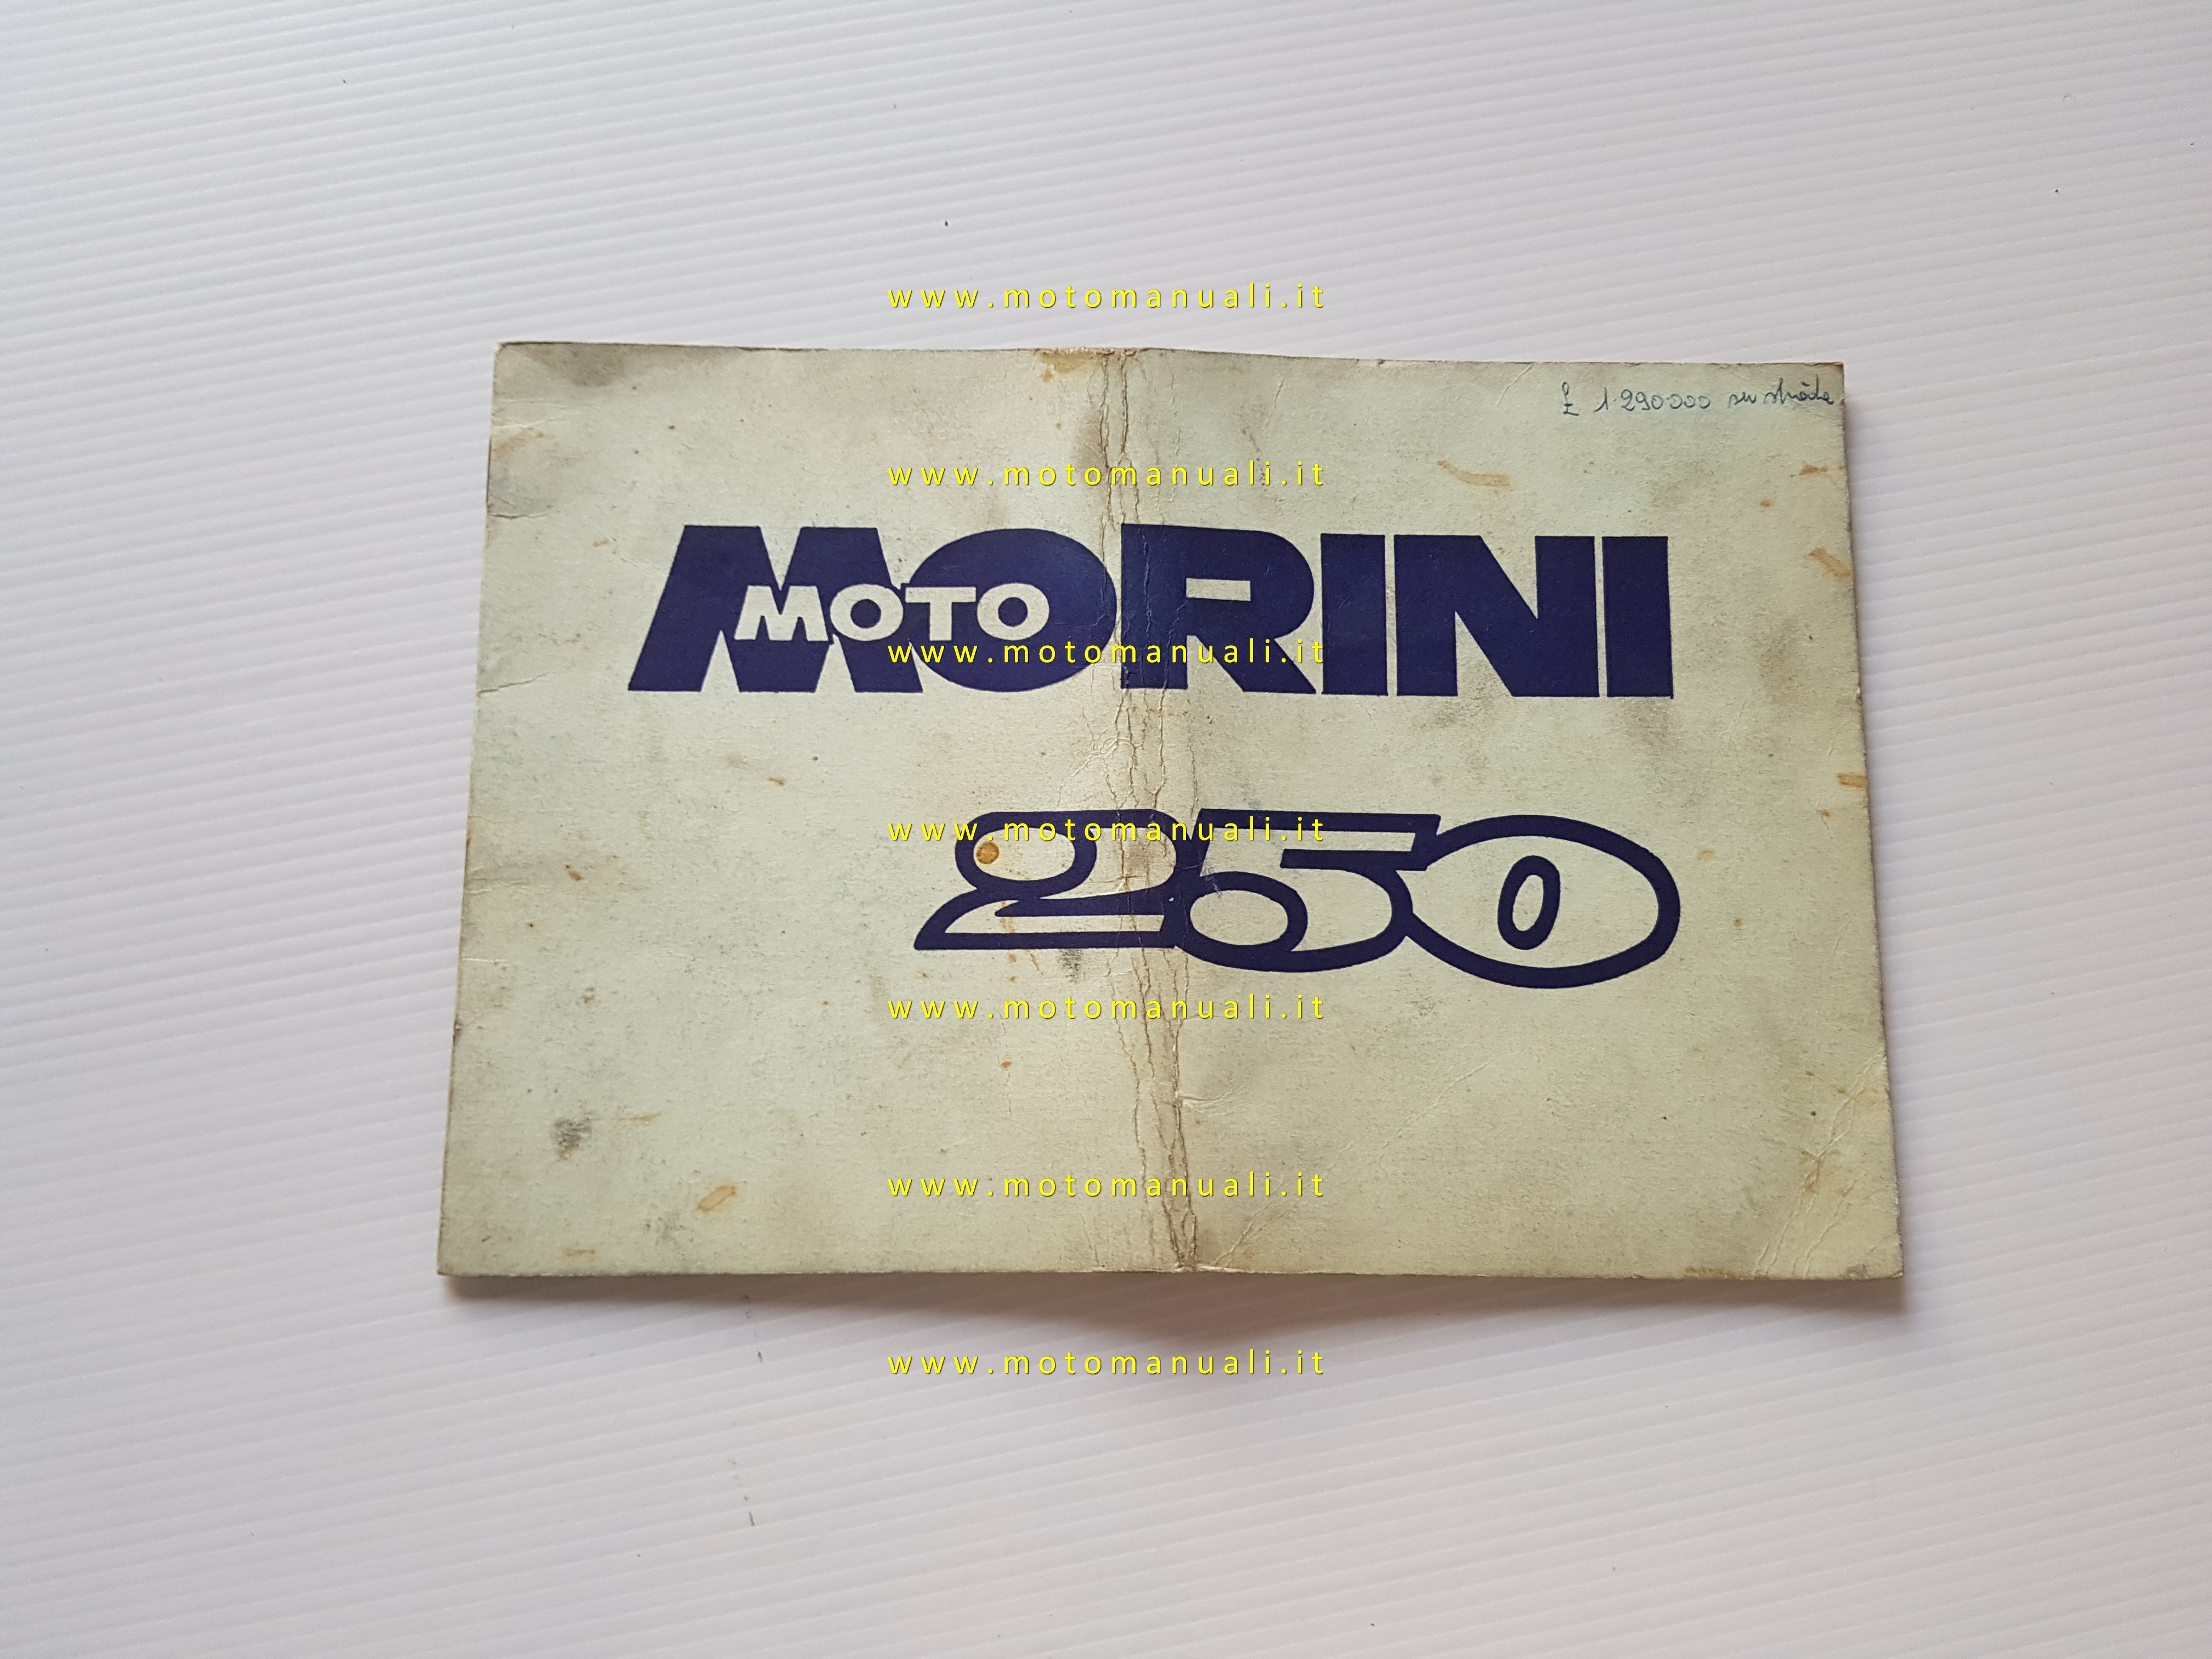 Owners manuals: Moto Morini 250 mono 1977 manuale uso manutenzione ...